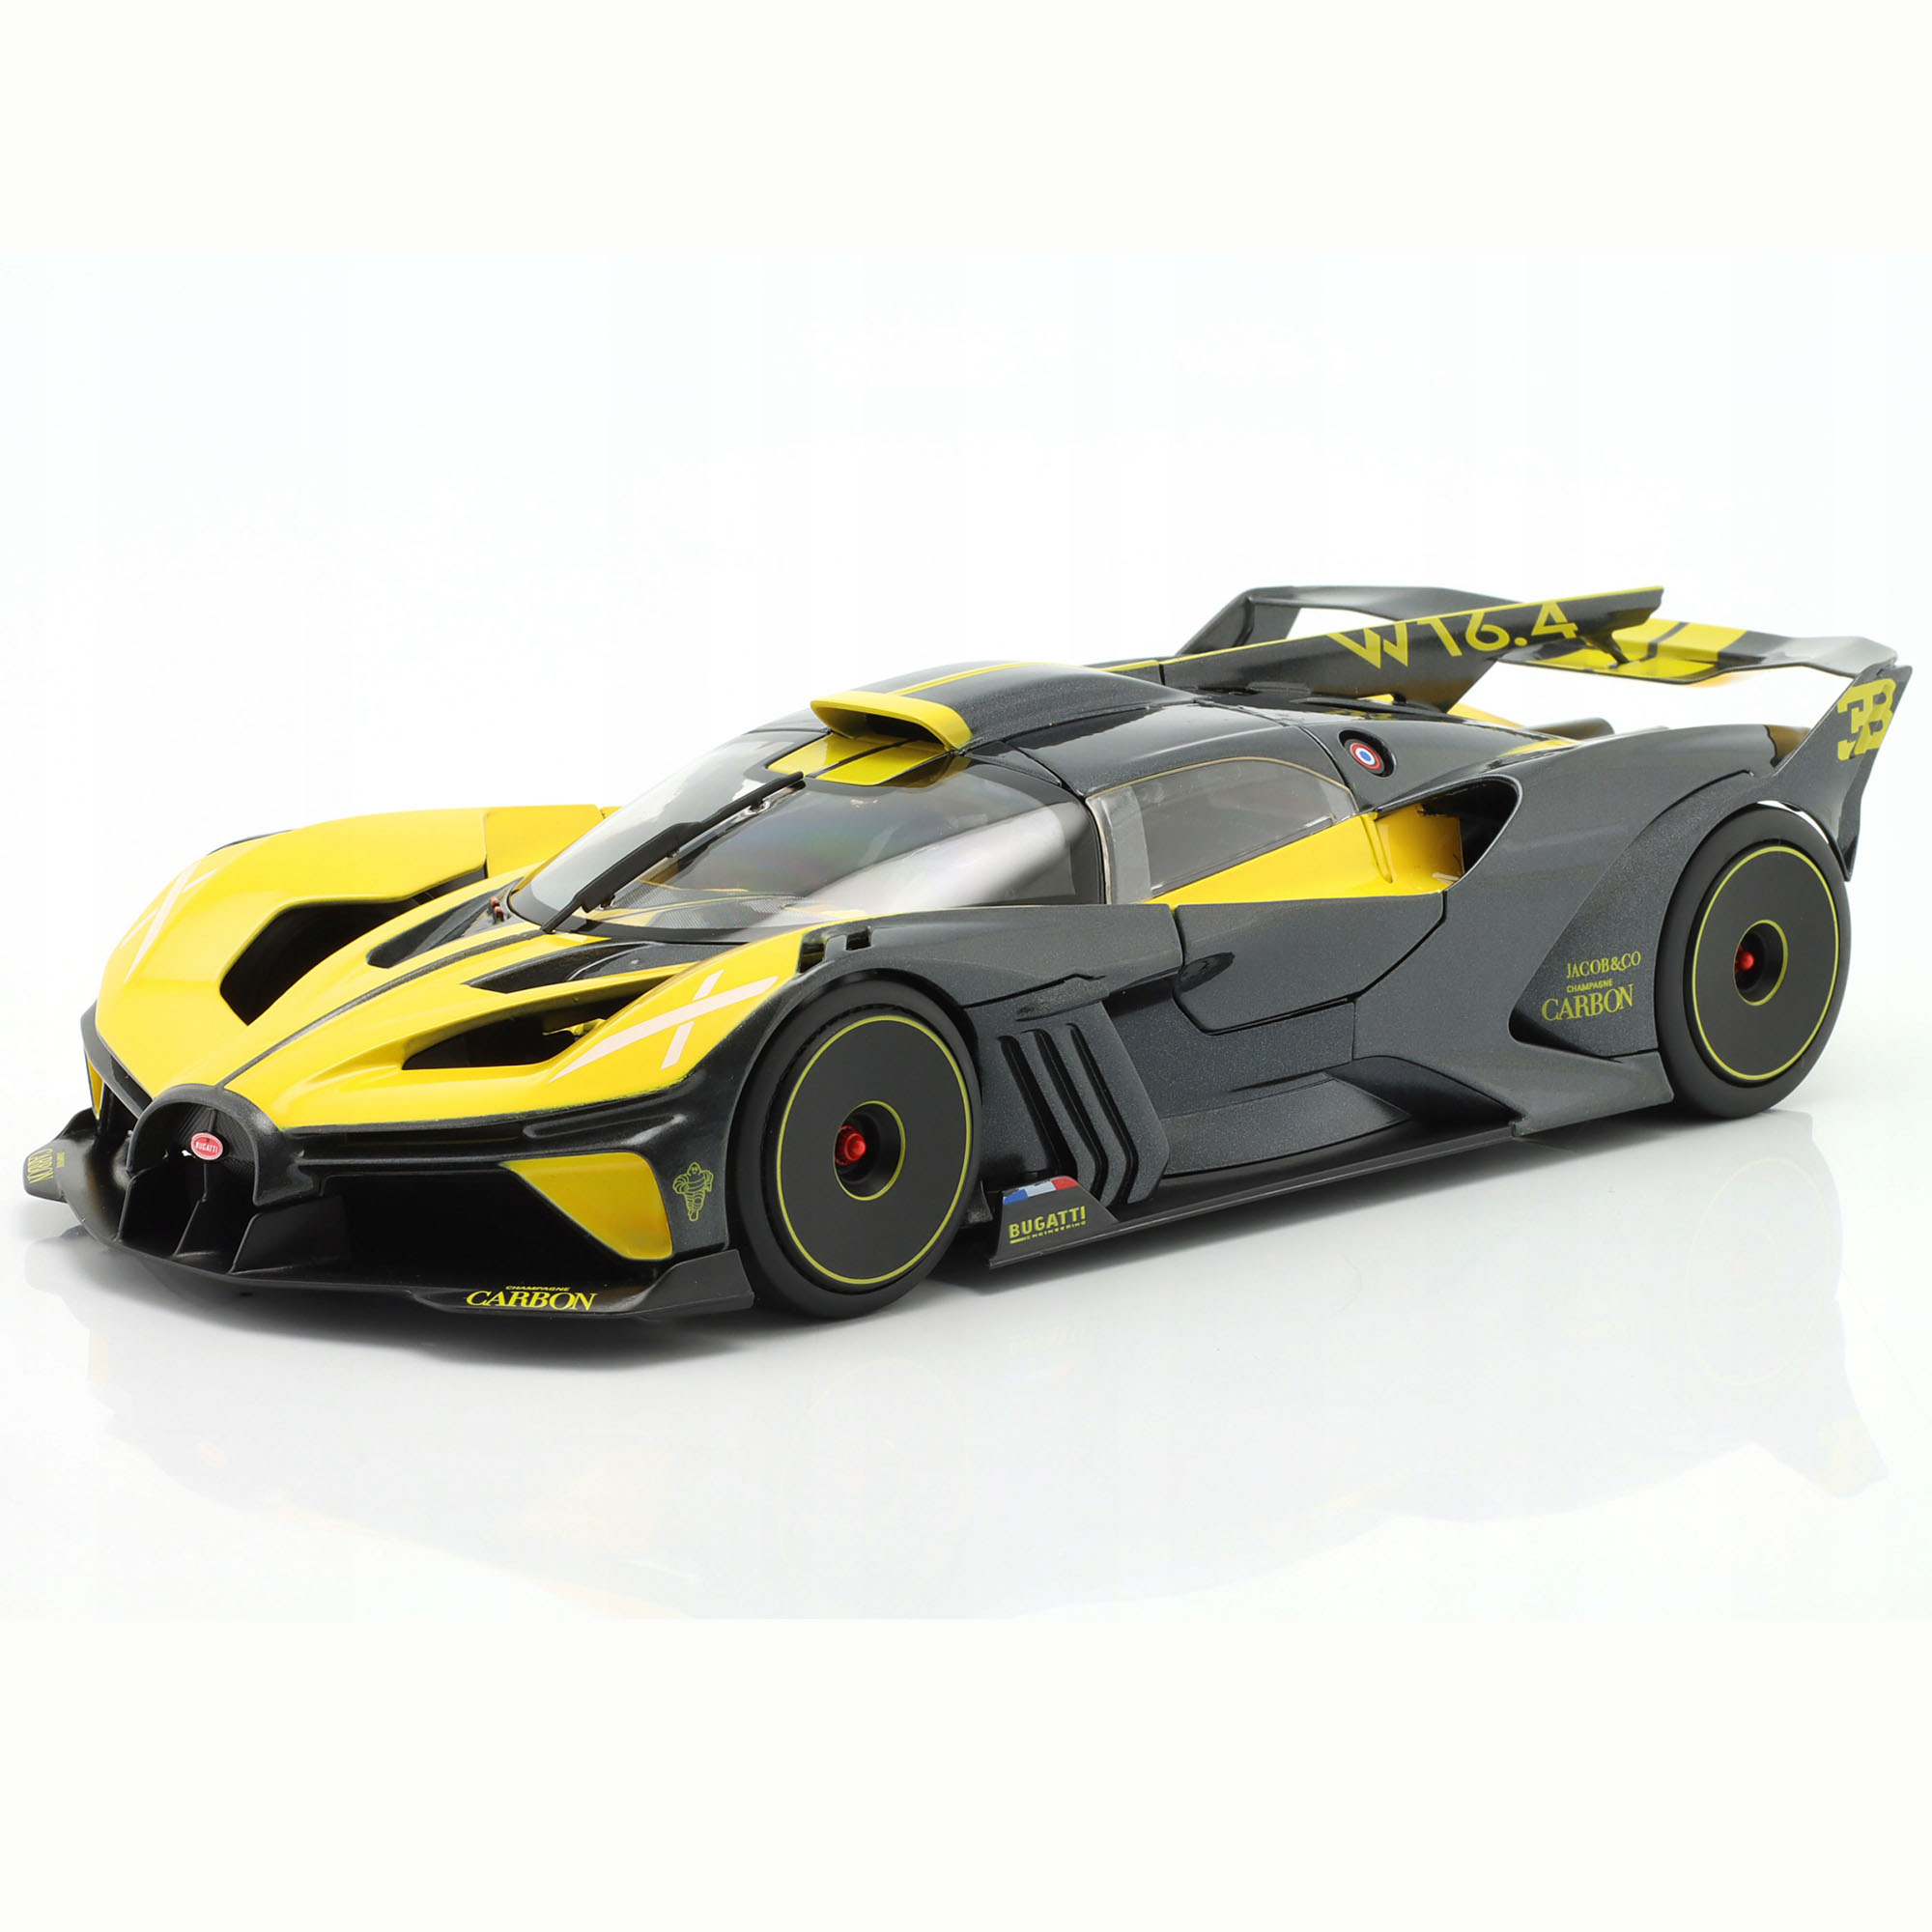 Машинка металлическая Bburago Bugatti Bolide, 1:18, желтая, 18-11047YL игрушечная машинка bburago металлическая 1 32 2020 mustang shelby gt500 18 43000